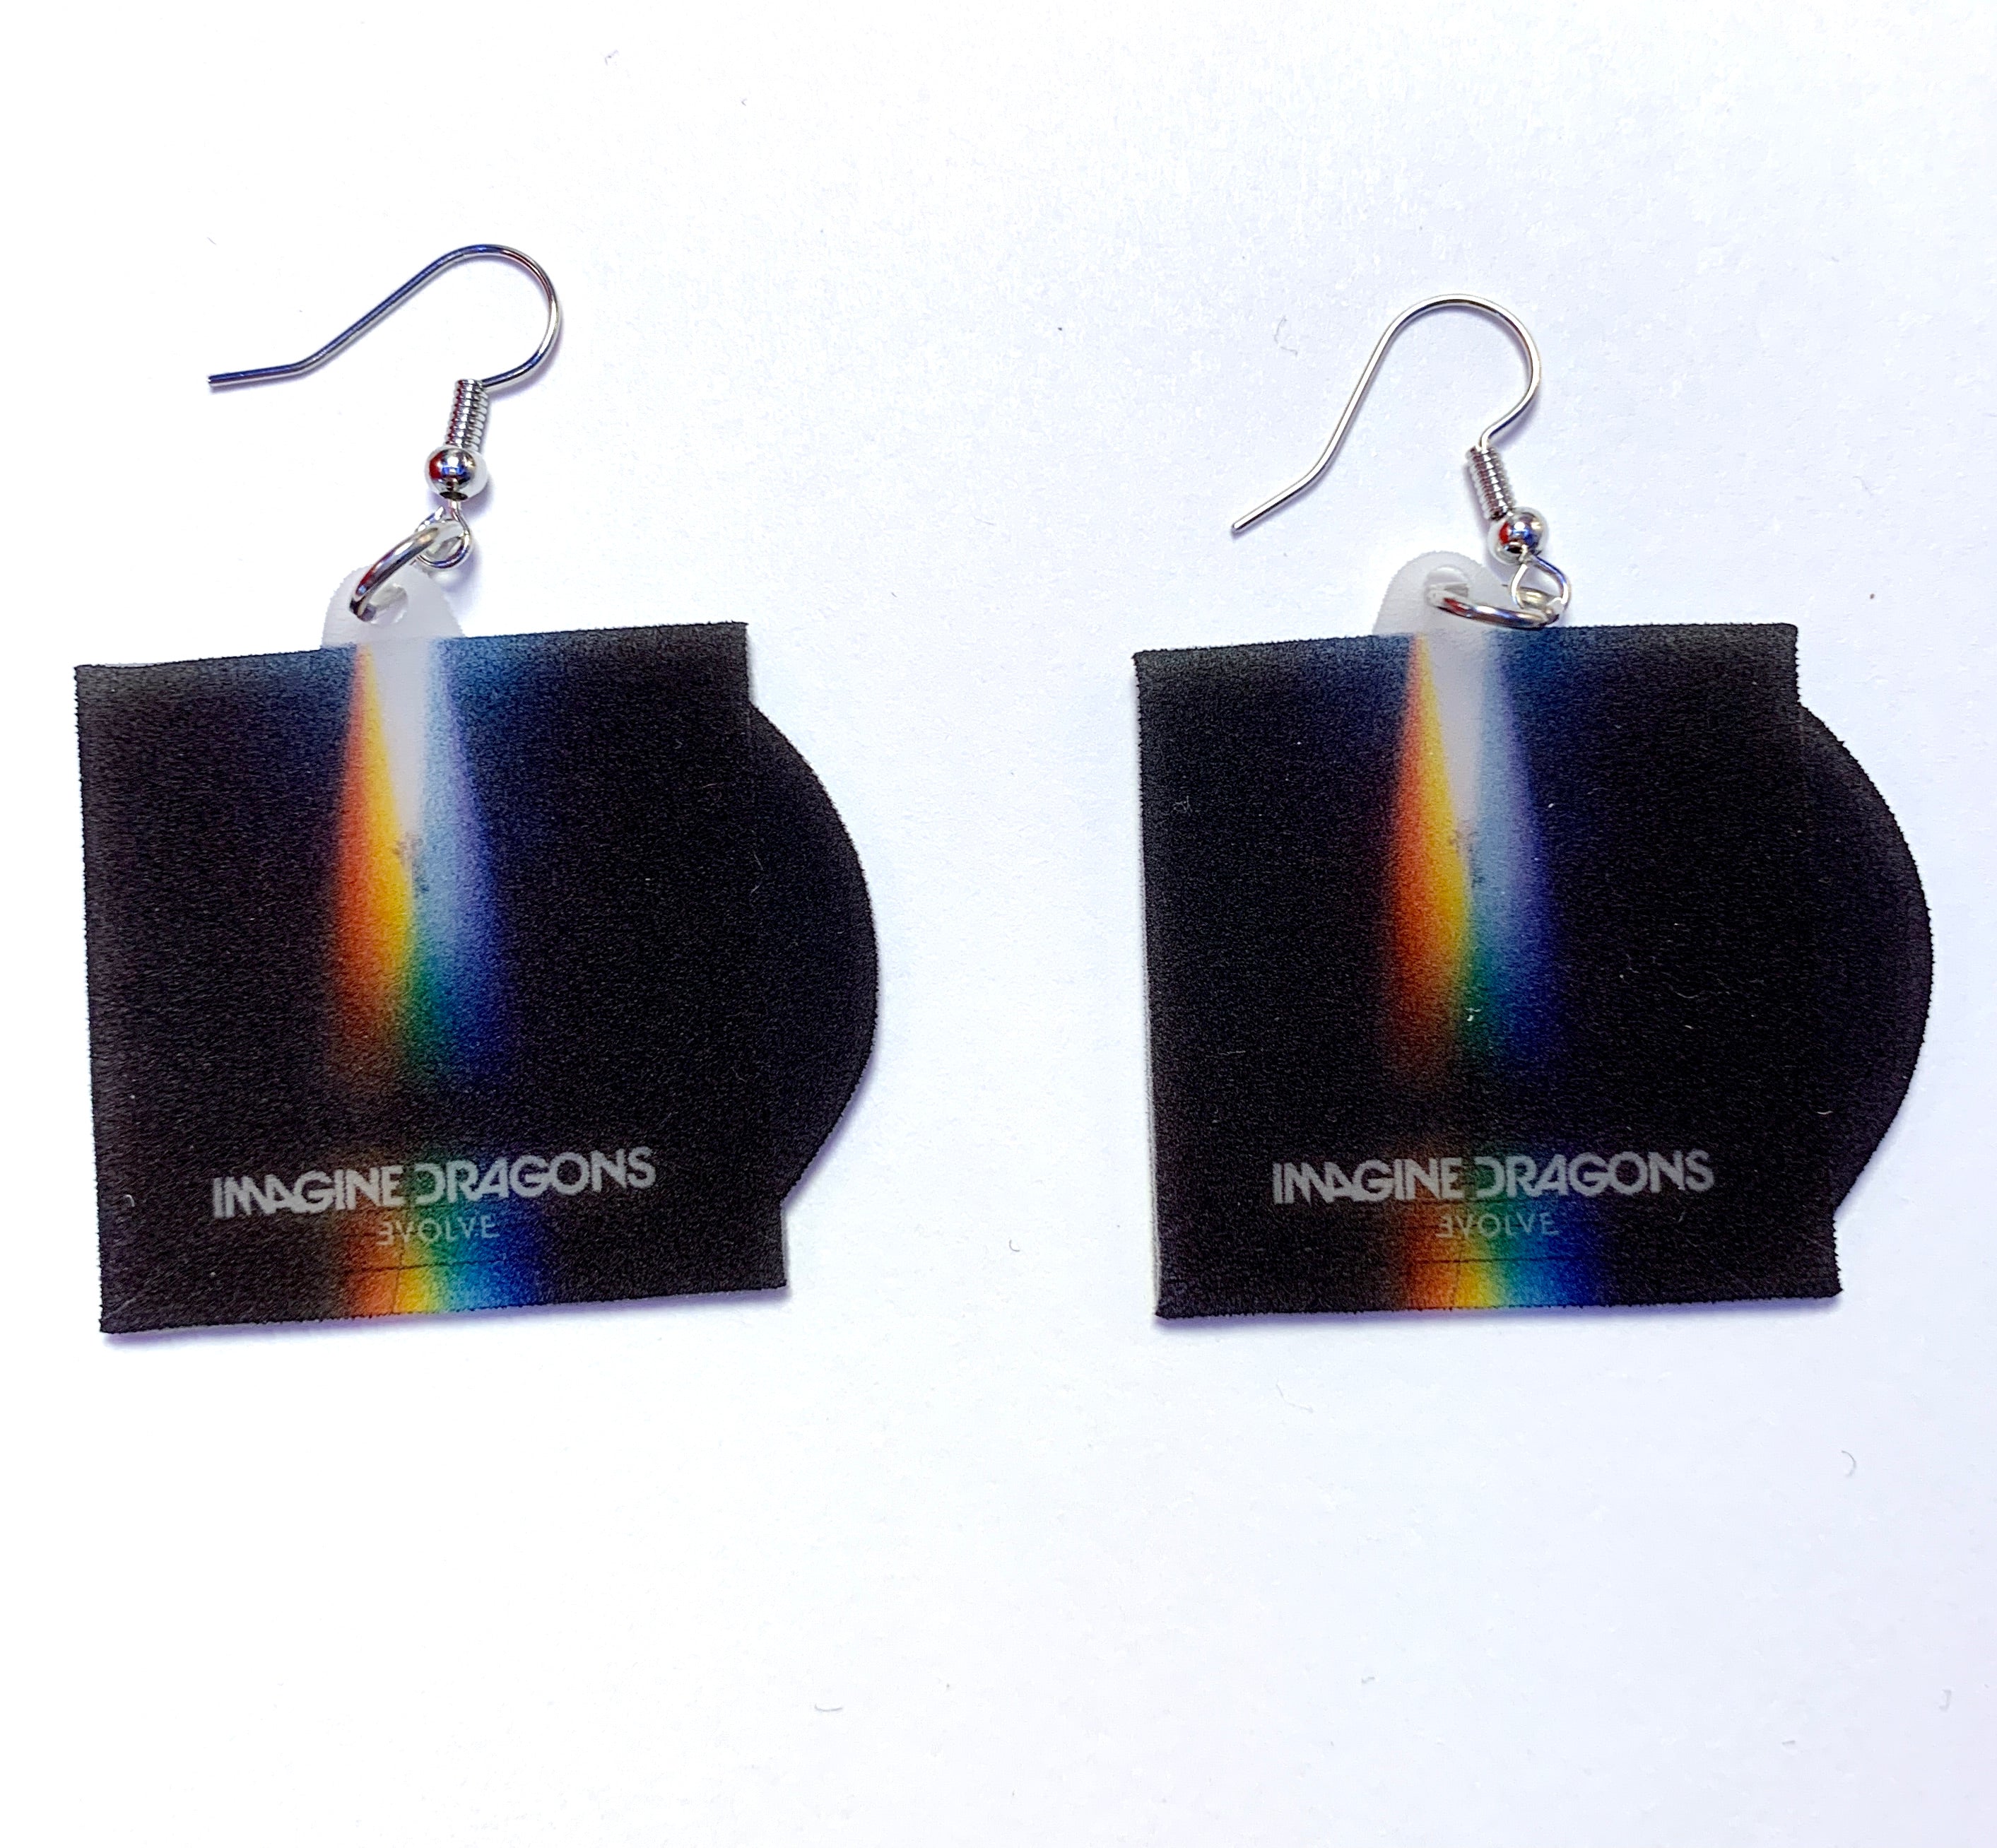 Imagine Dragons Evolve Vinyl Album Handmade Earrings!